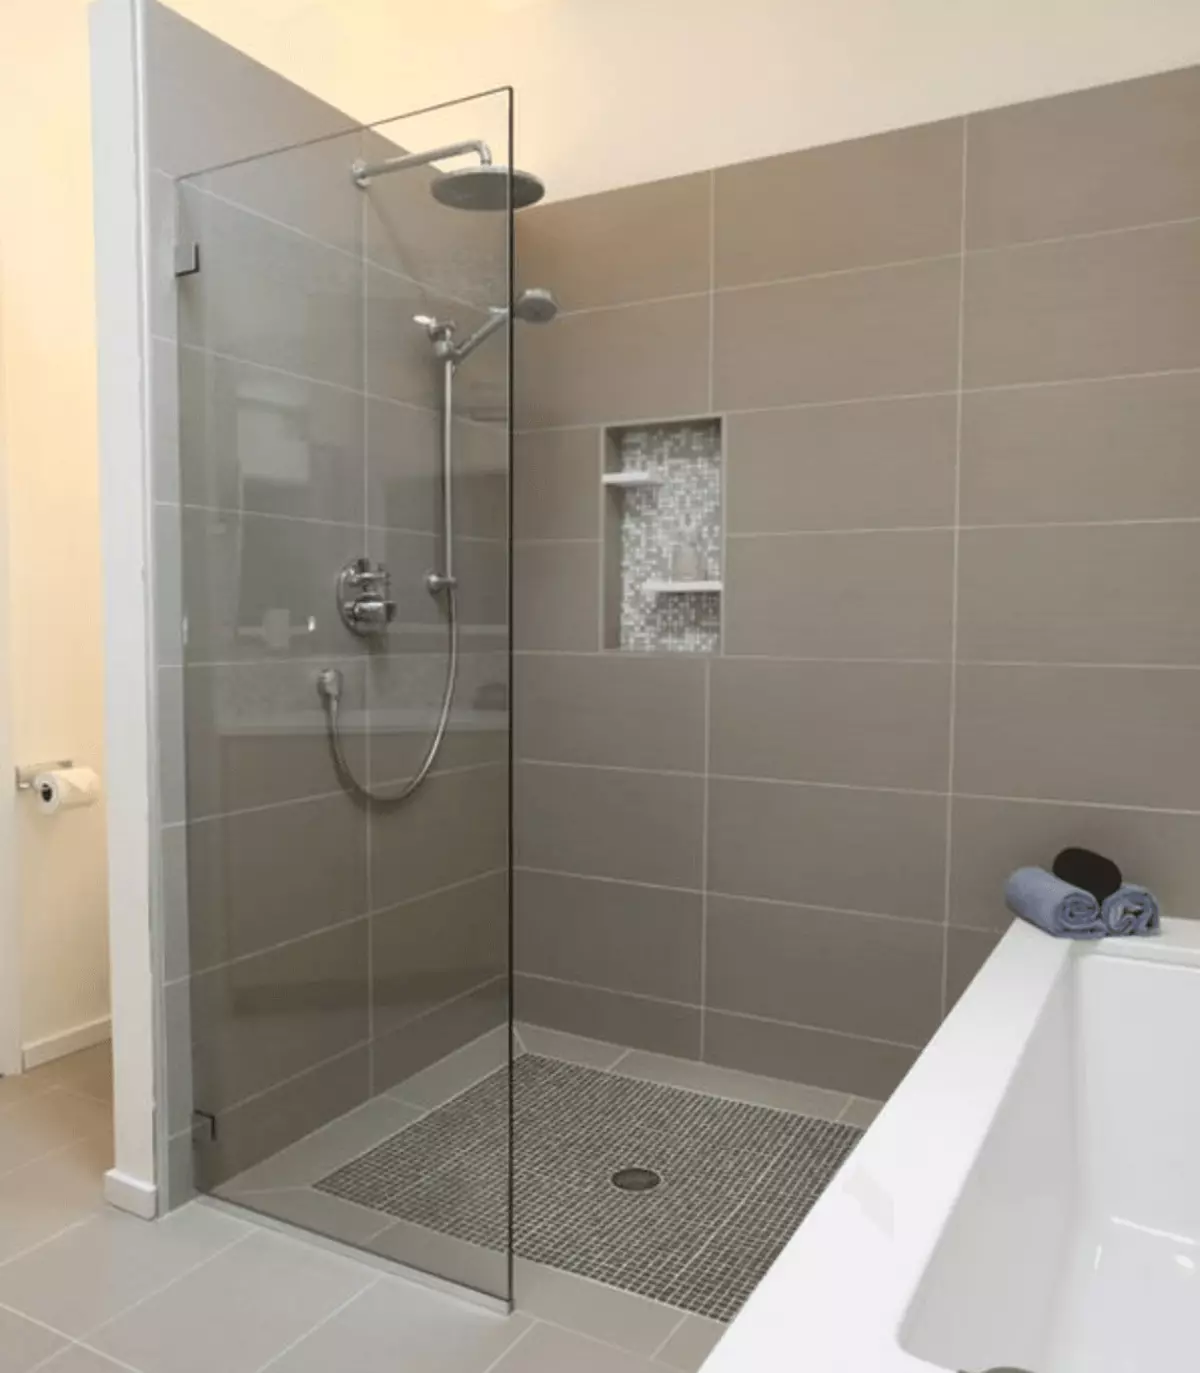 Dusj på badet uten hytte (86 bilder): Baderomsdesignalternativer med dusj uten pall og fliserhytter, prosjekter 21384_19